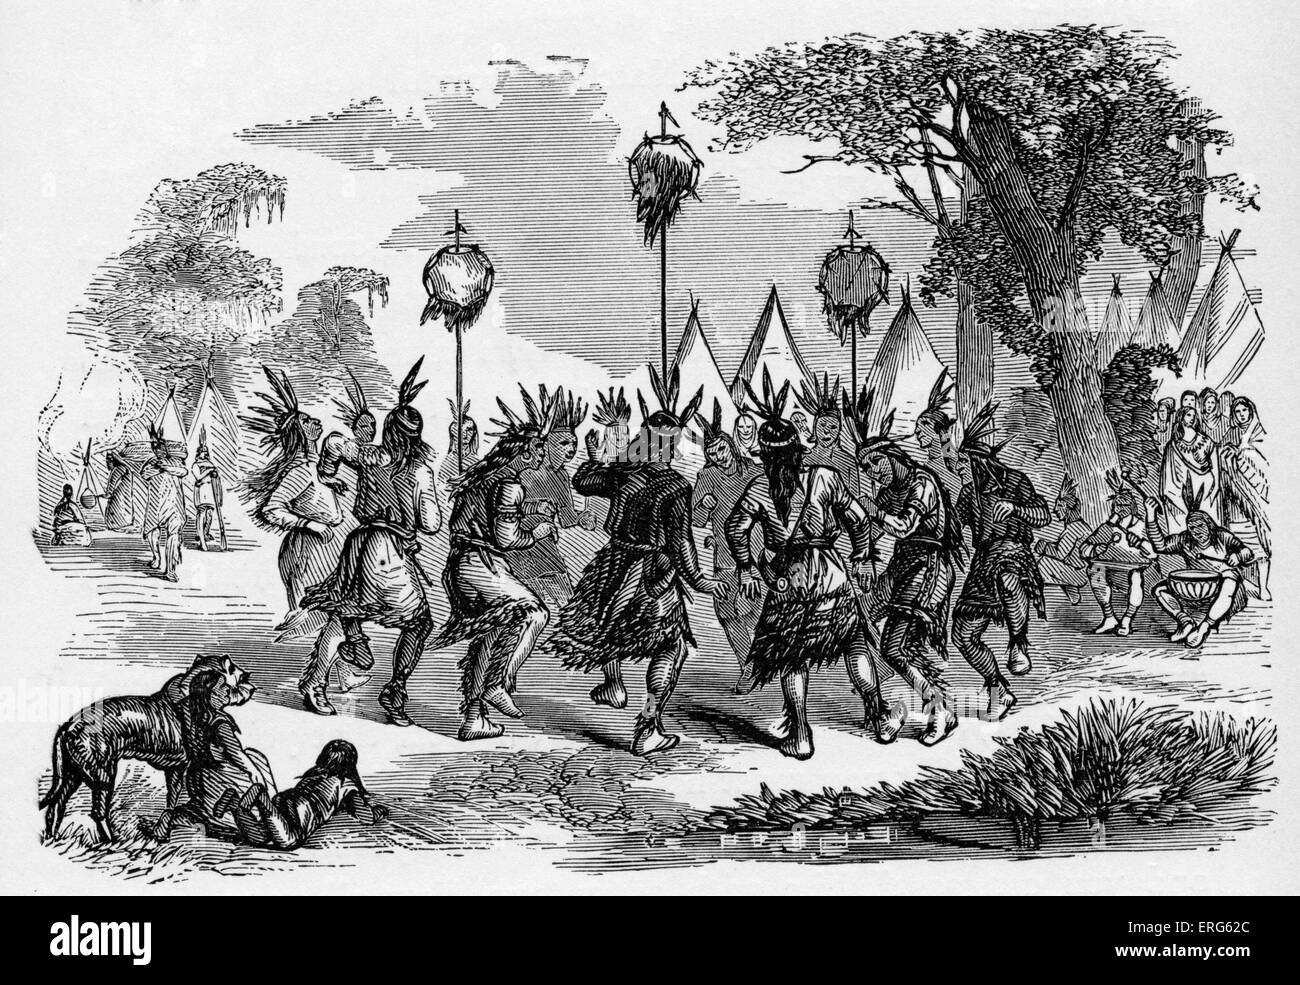 Les Amérindiens l'exécution d'un cuir chevelu Danse, publié en 1887. La Danse du cuir chevelu a été effectuée par les guerriers de tribus telles que les Banque D'Images